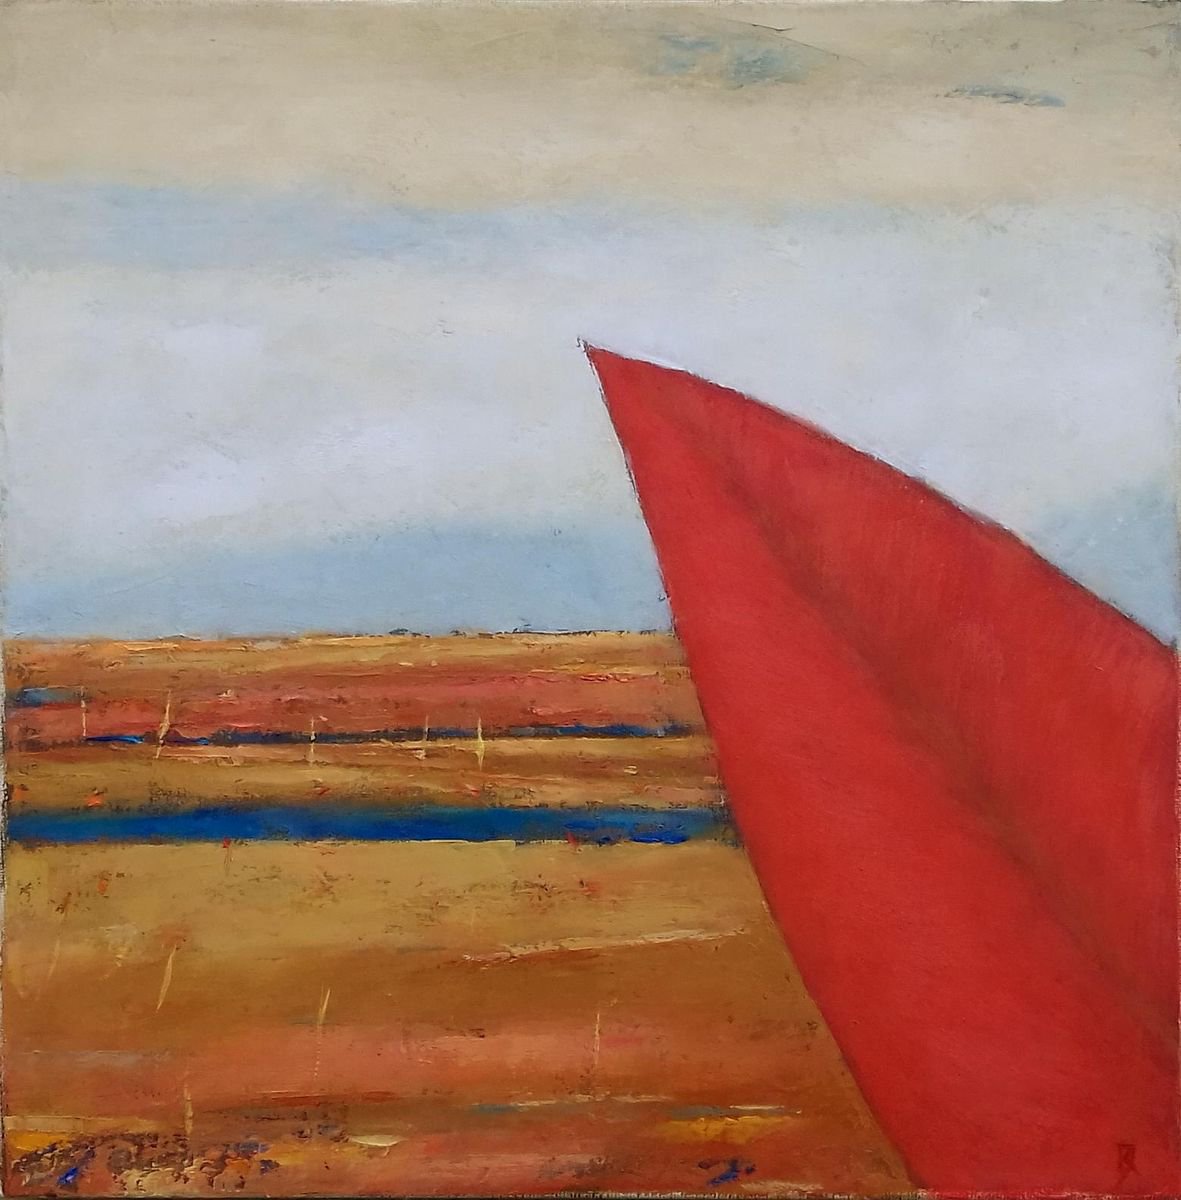 Landscape With A Red Leaf by Kestutis Jauniskis